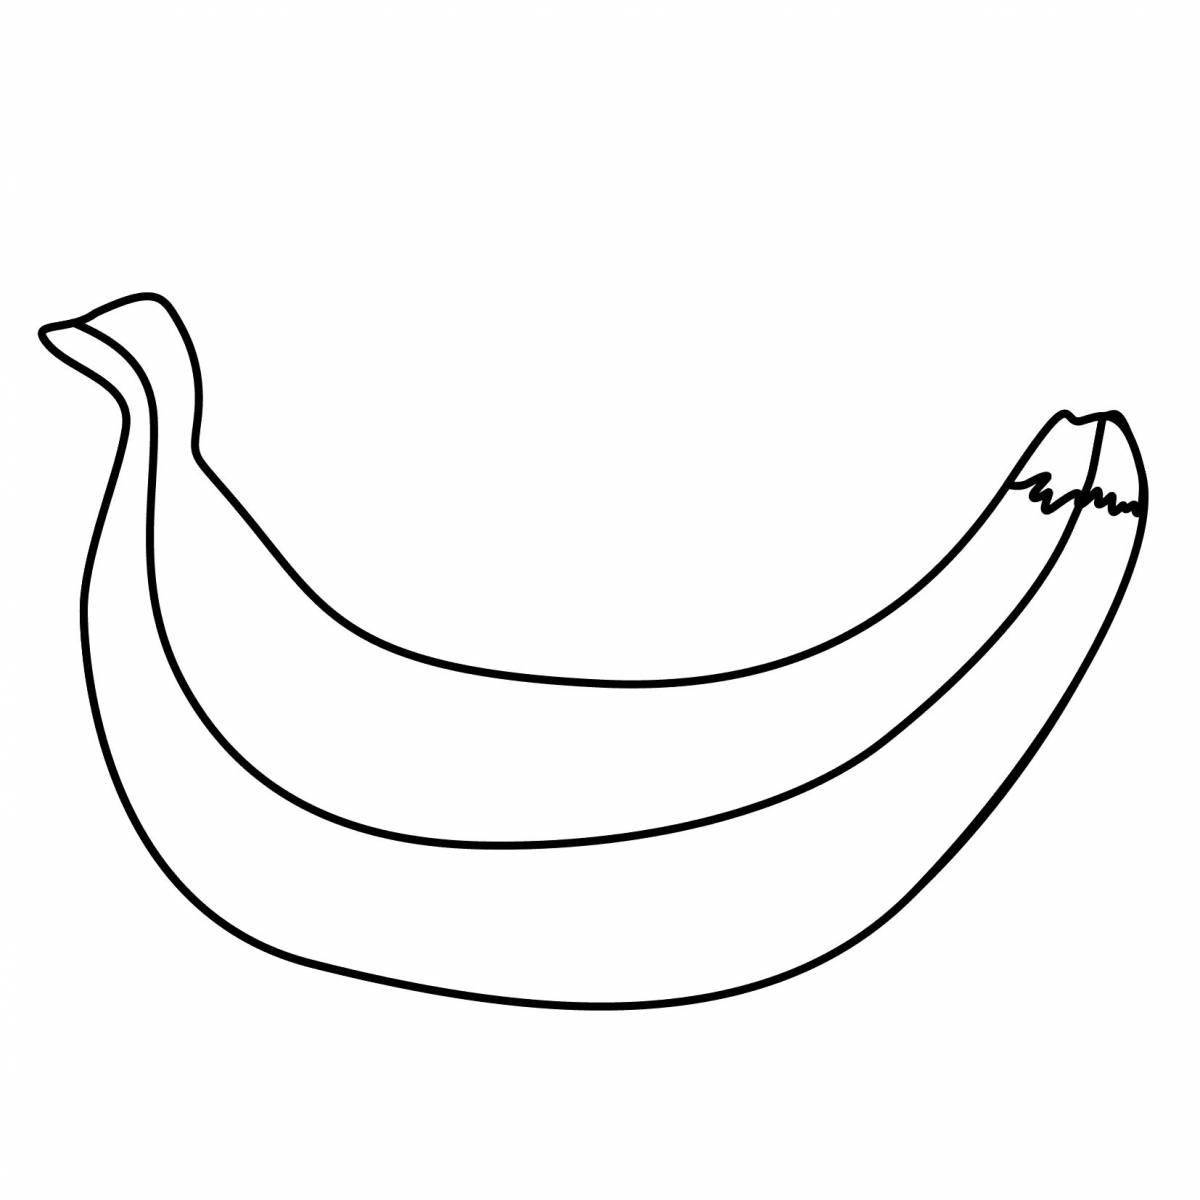 Living drawing of a banana